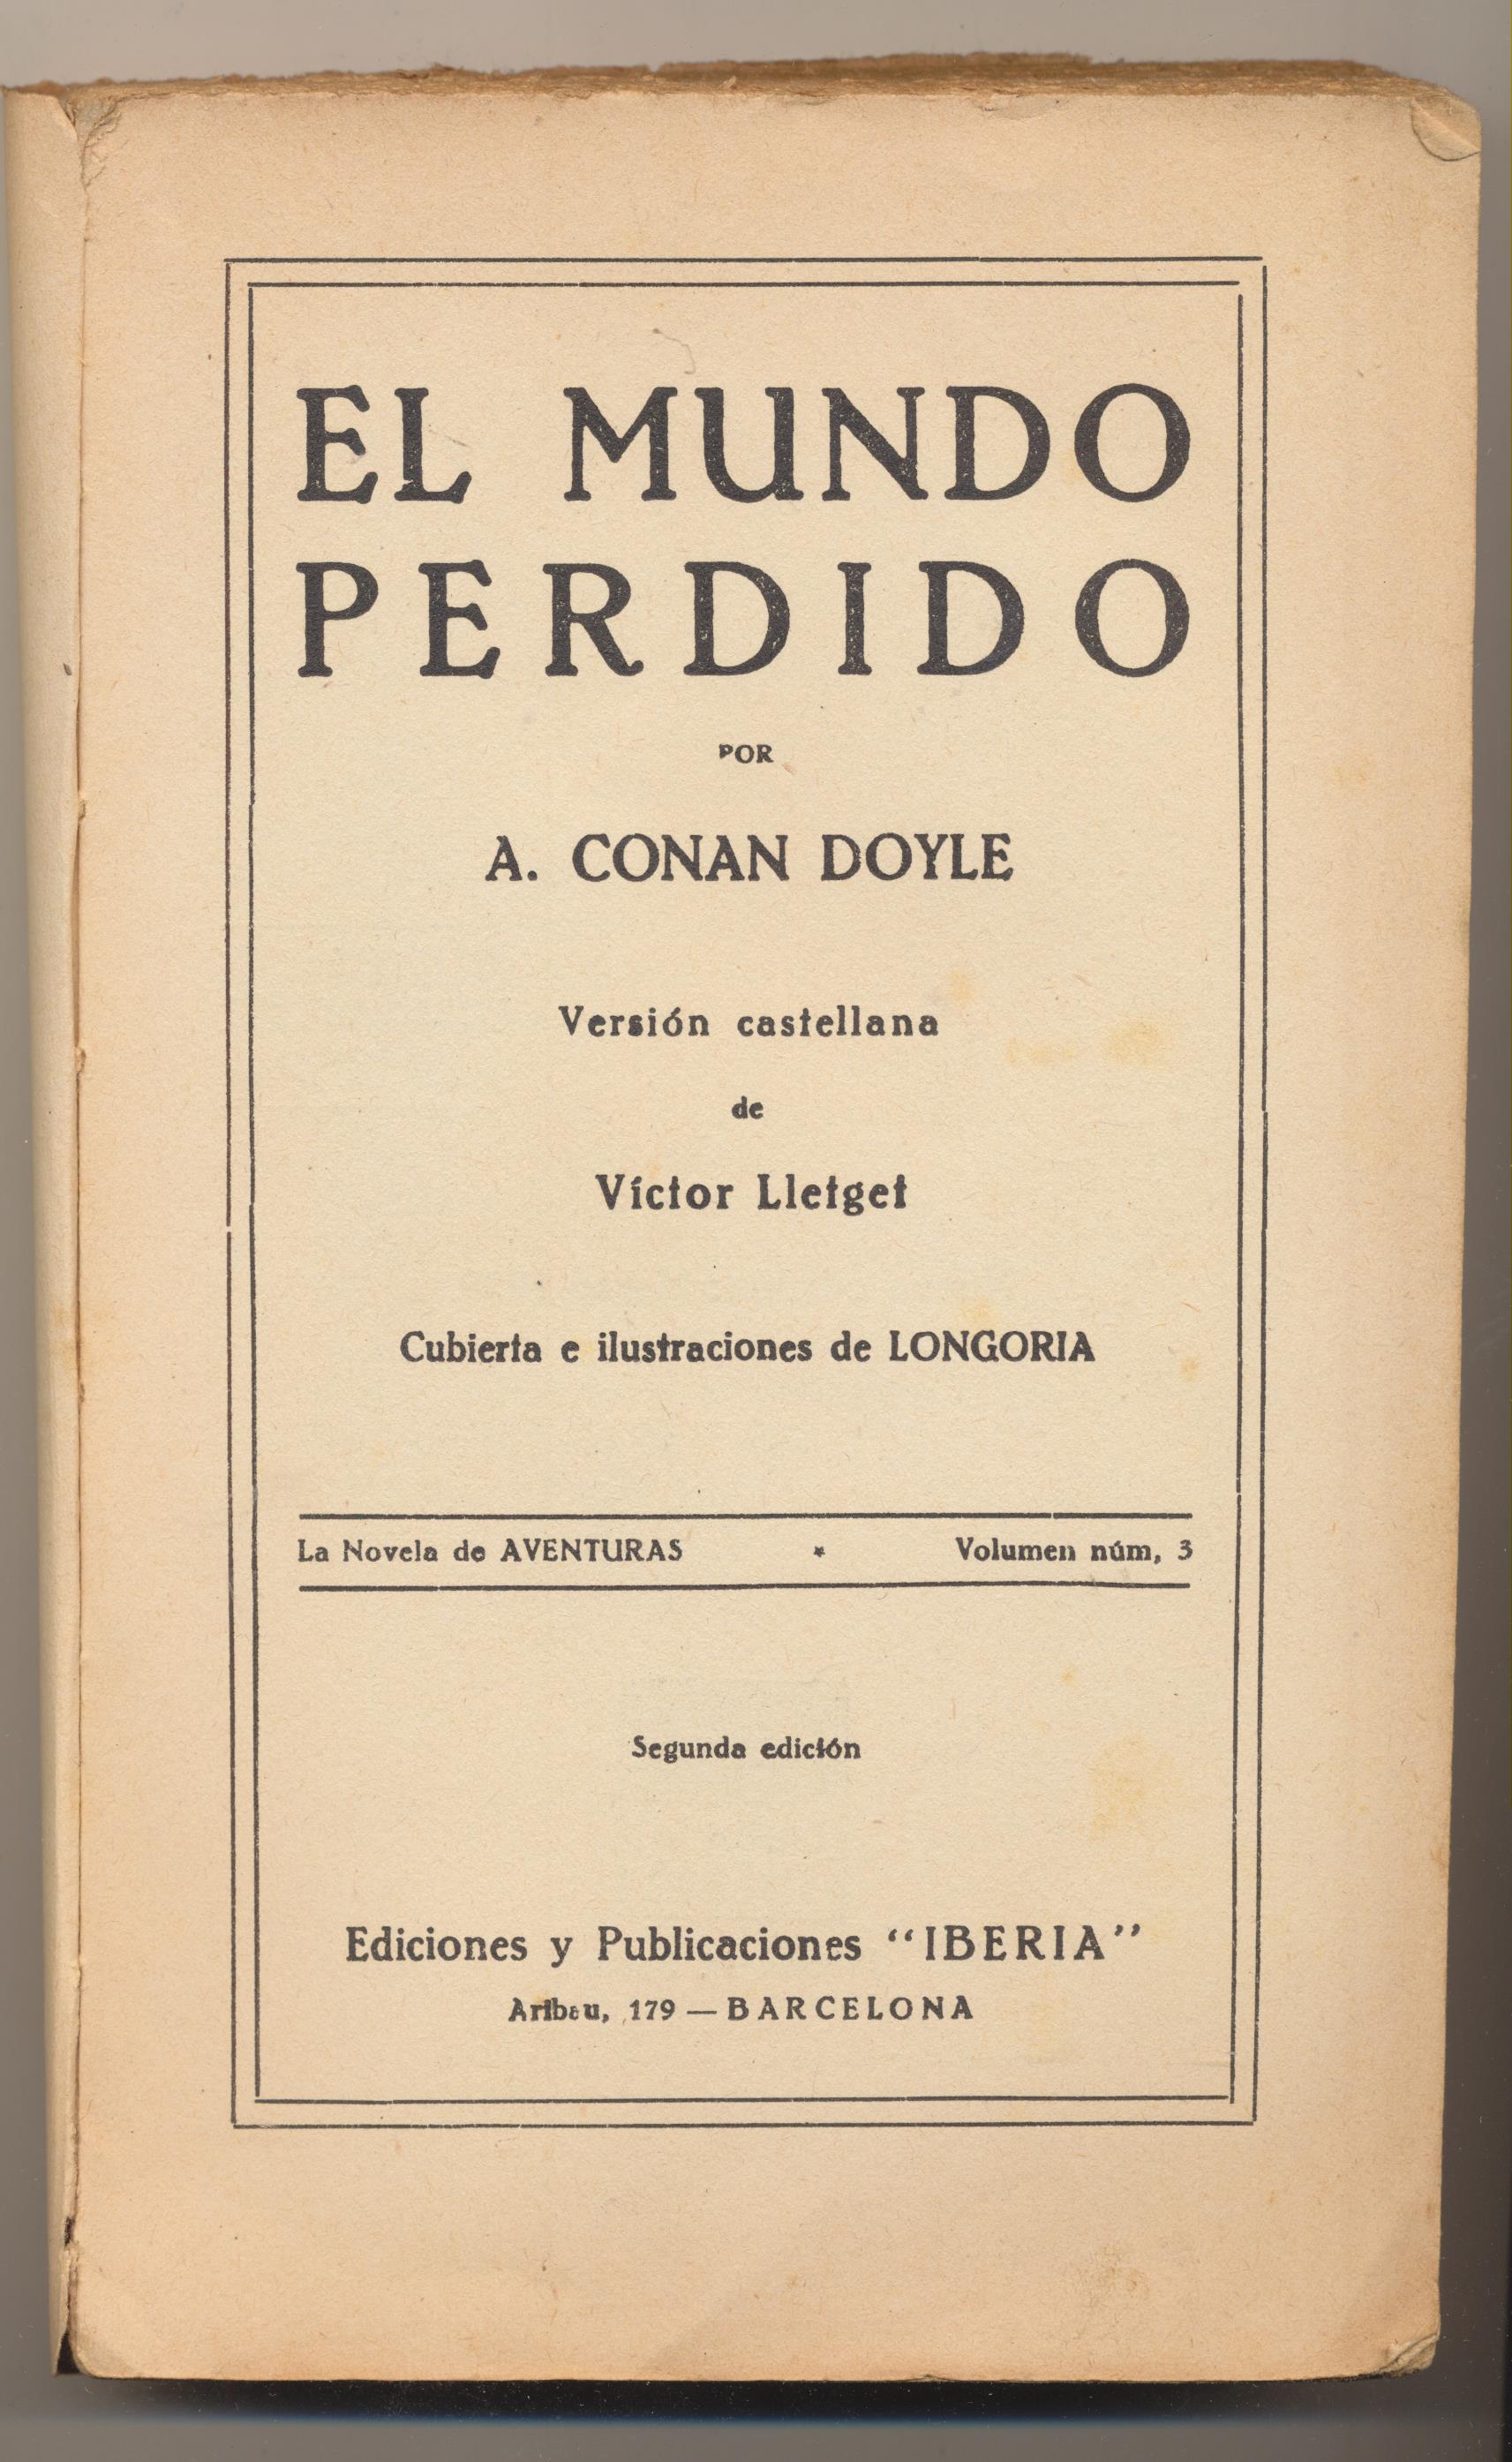 La Novela de Aventuras Volumen 3. A. Conan Doyle. El Mundo perdido. 2ª Edición Publicaciones Iberia 1929